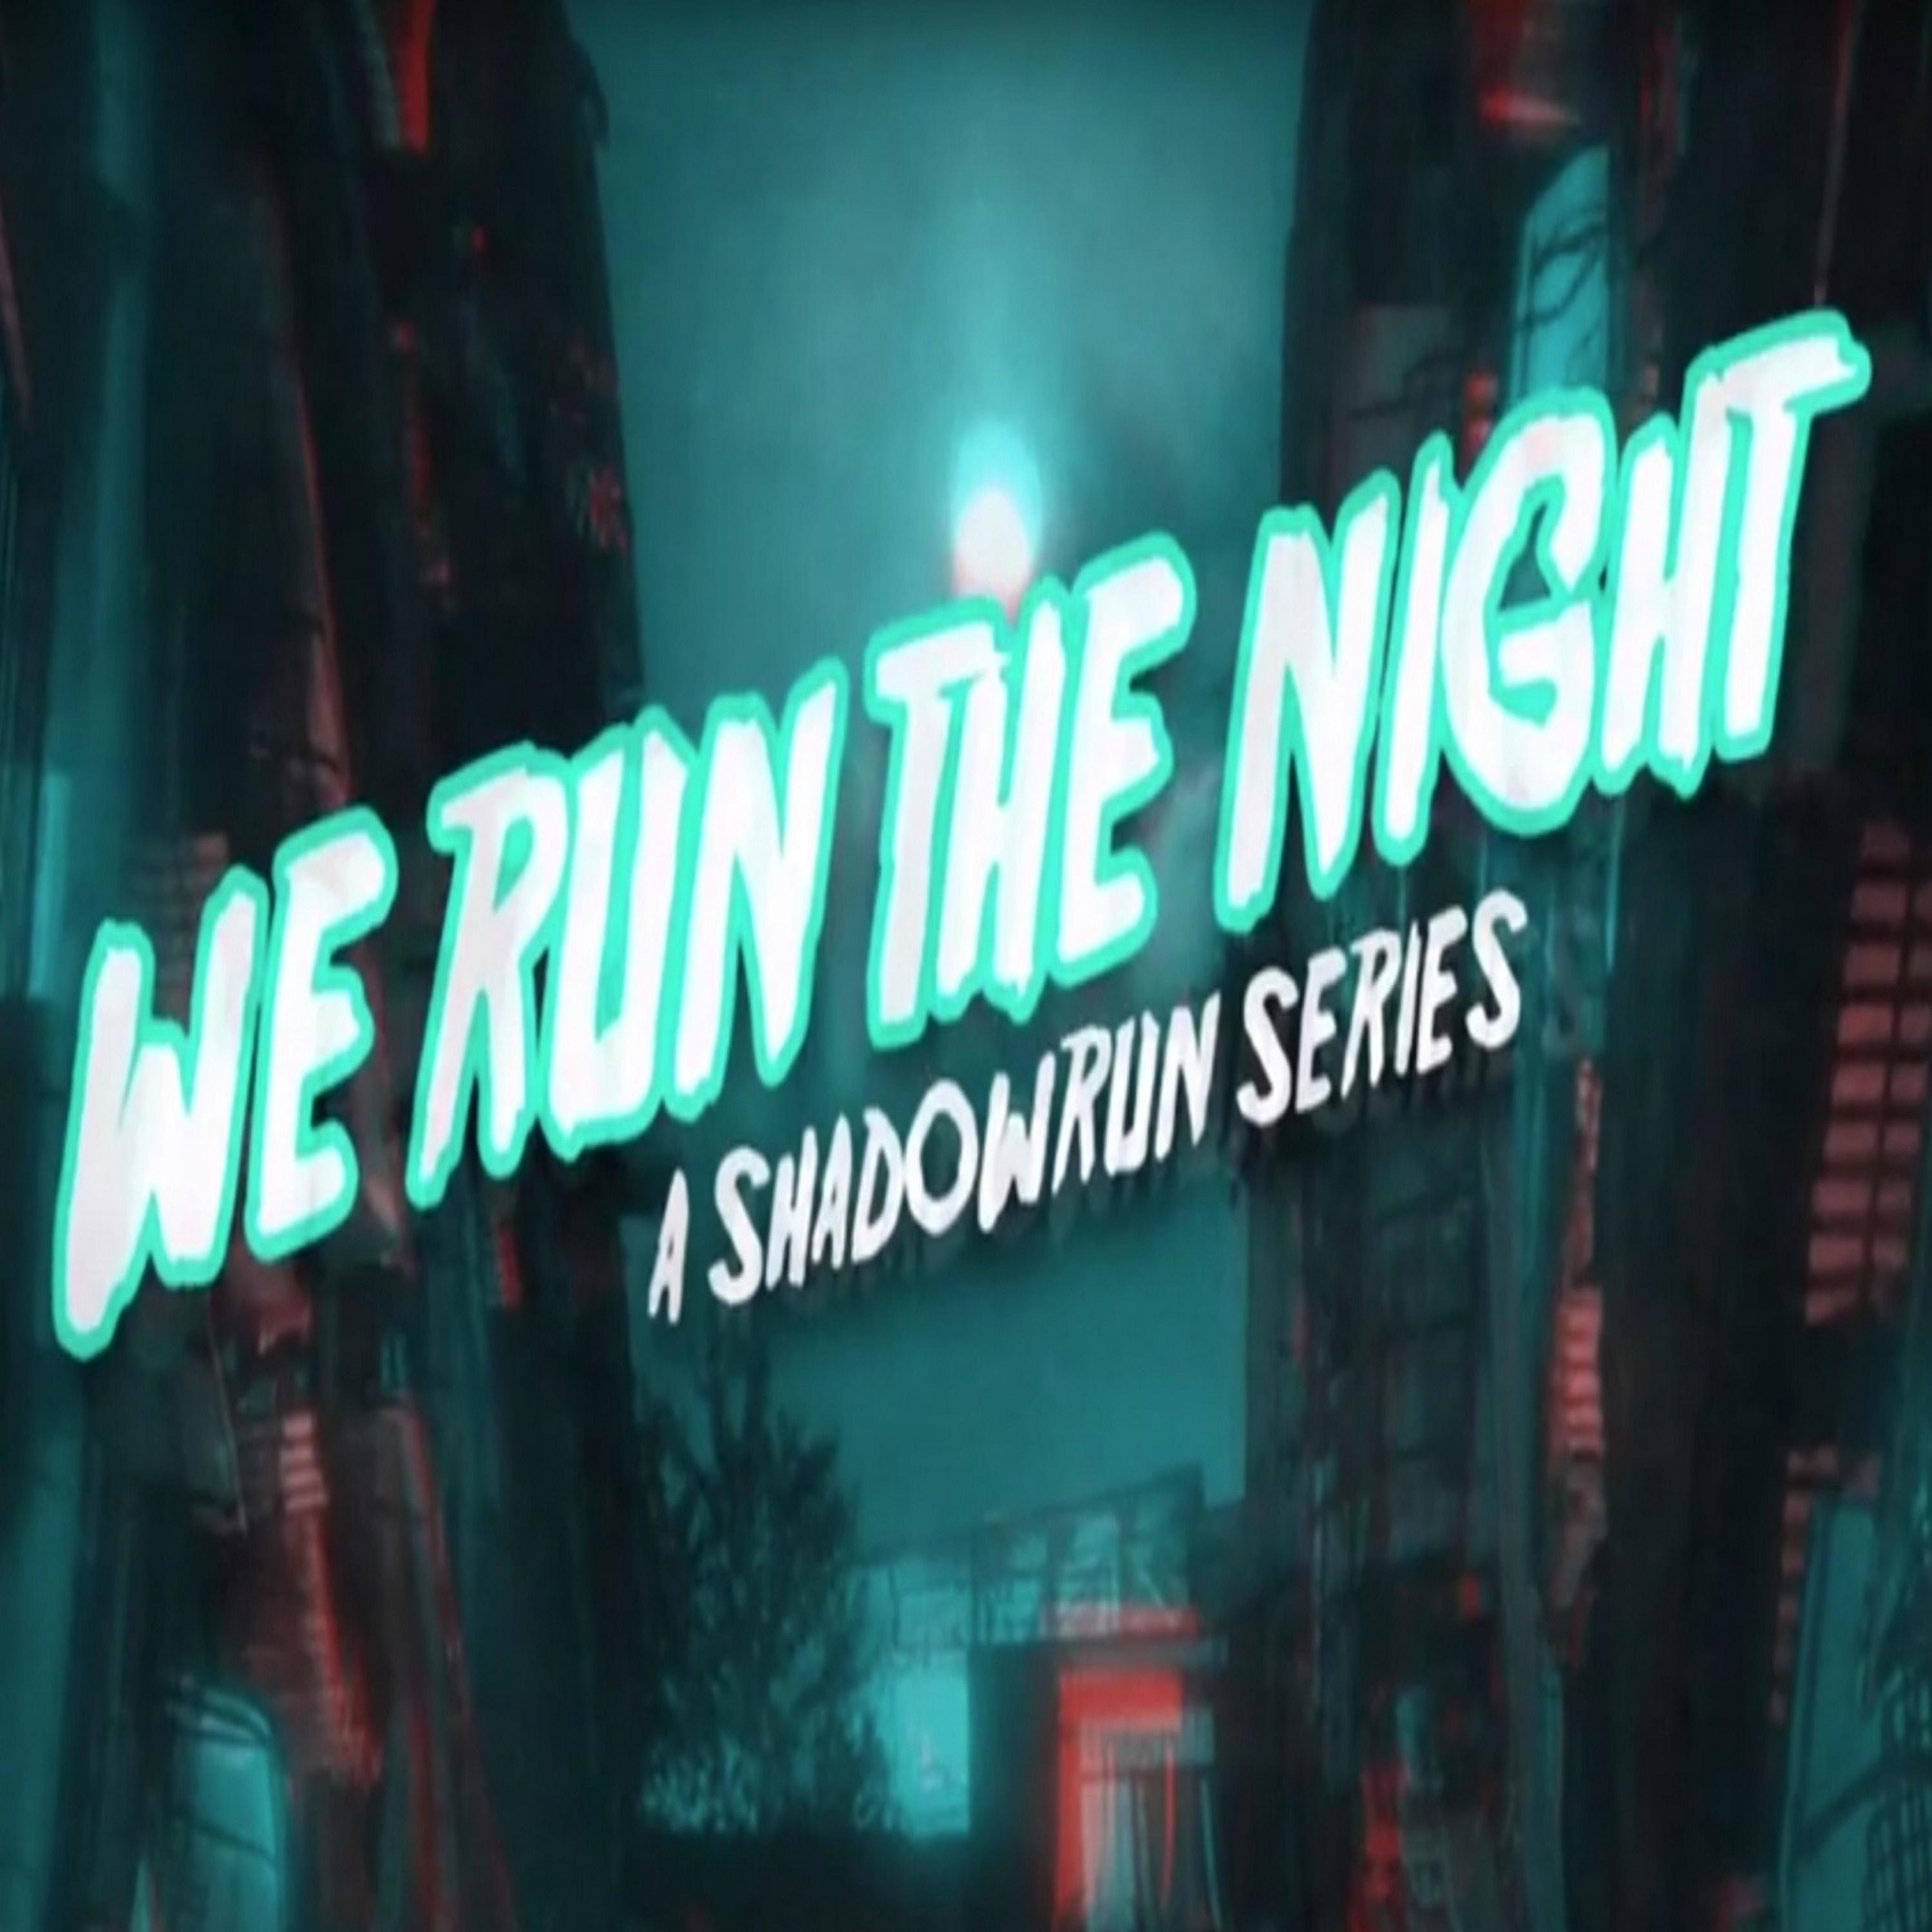 We Run The Night